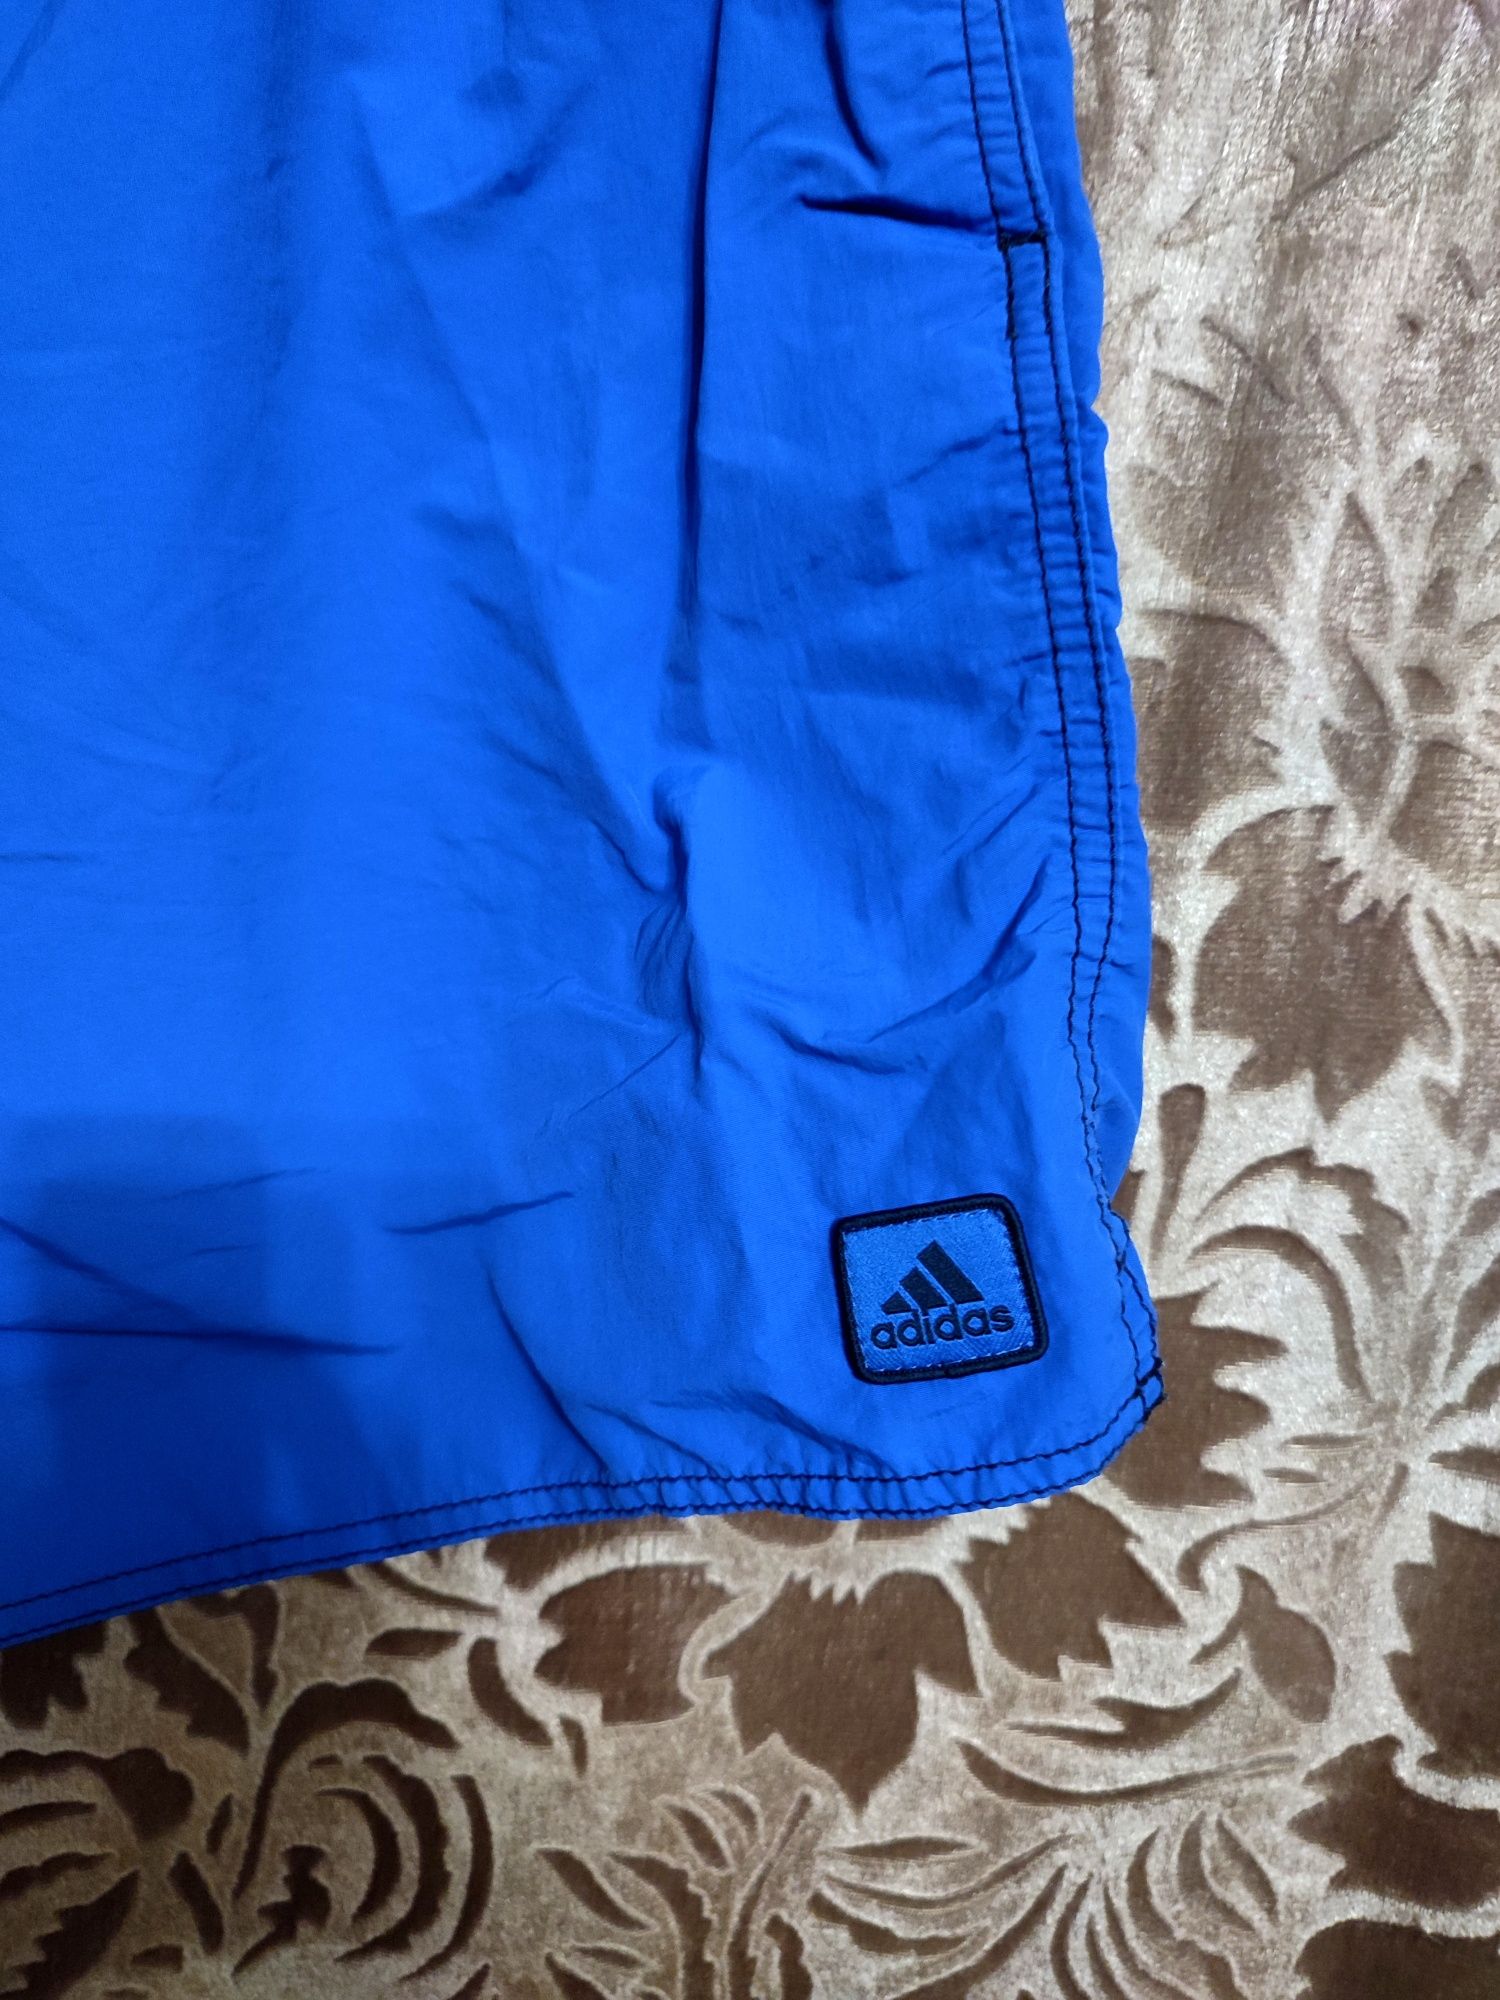 Шорты ,,Adidas" 54-56р., мужские плавательные шорты.